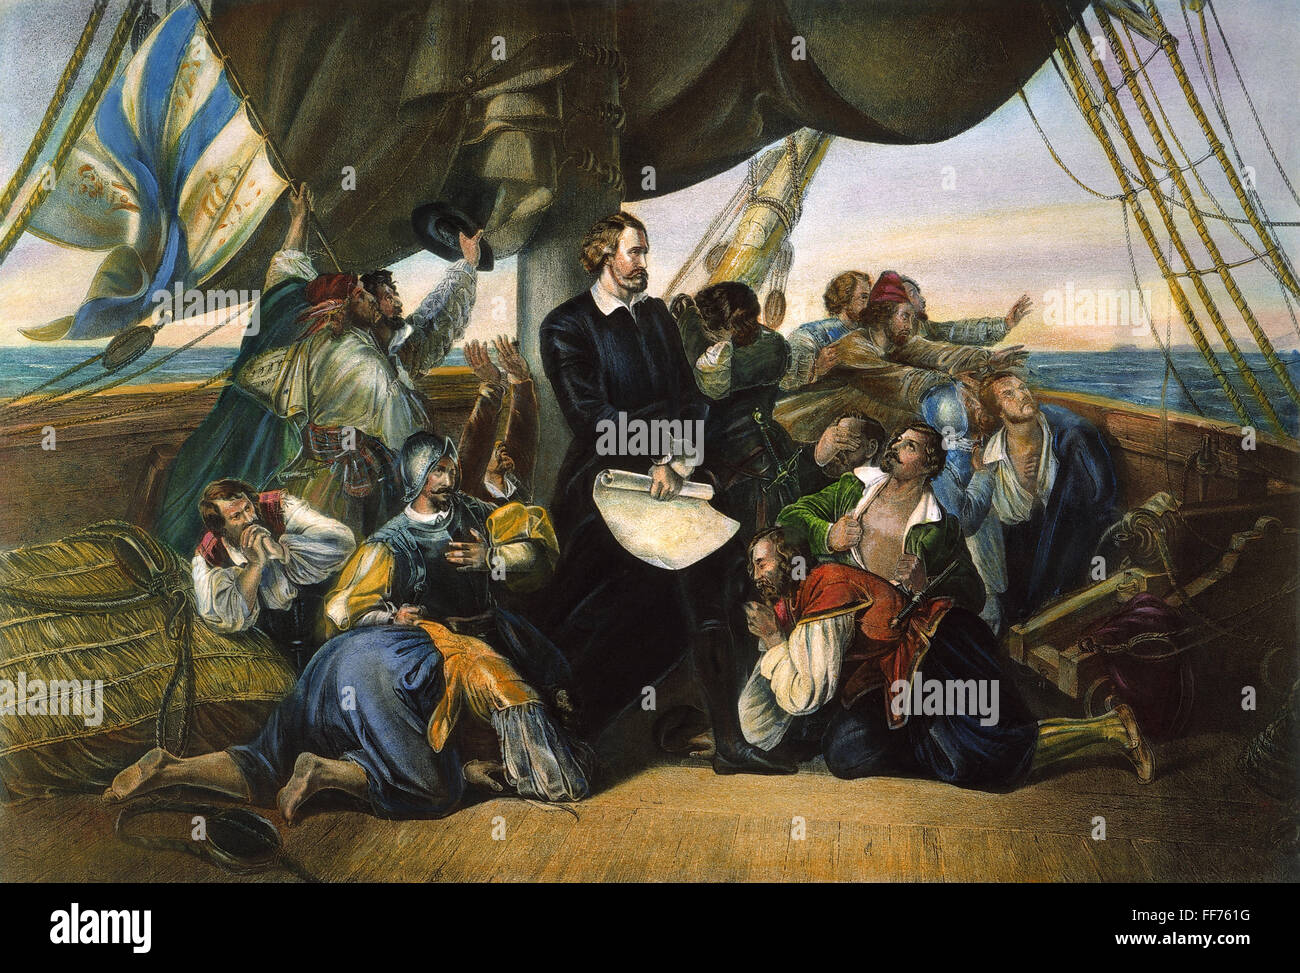 COLUMBUS: NEUE WELT, 1492. /nThe ersten Blick von der neuen Welt (Columbus entdeckt Amerika). Amerikanische Lithographie, 1892, nach einem Gemälde von 1846 von Christian Ruben. Stockfoto